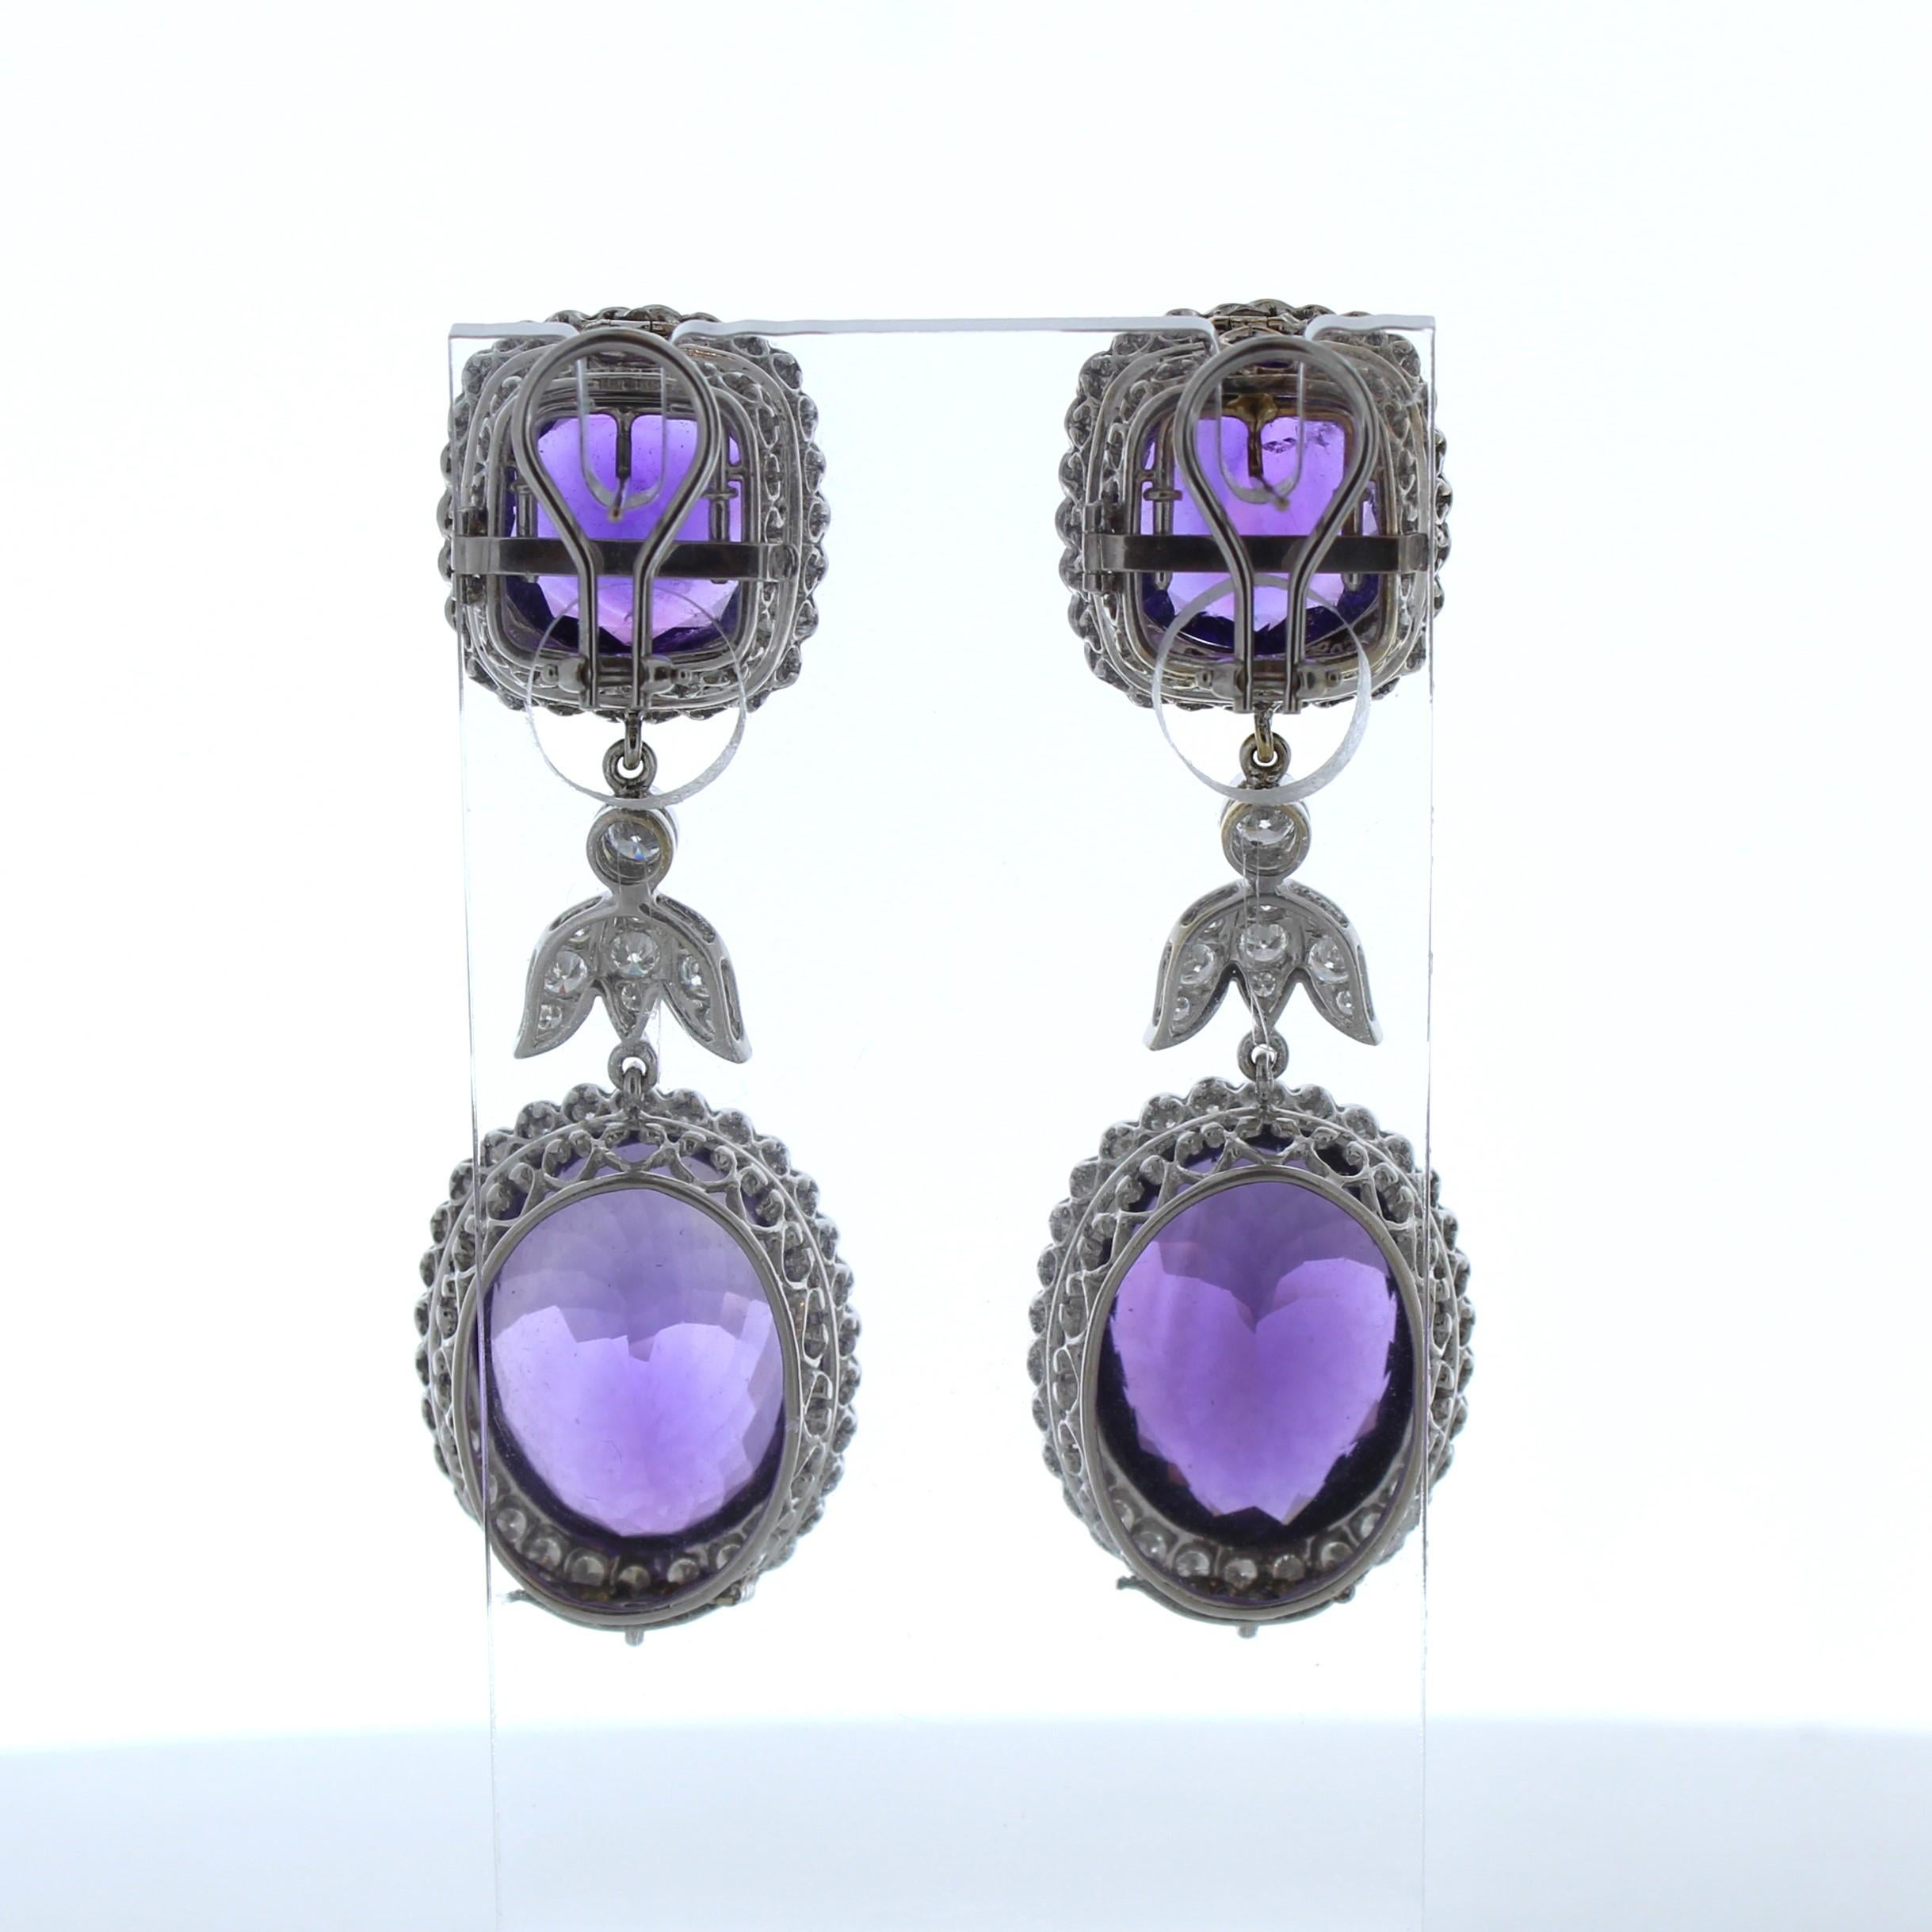 Oval Cut 25 Carat Oval Shape Purple Amethyst Fashion Earrings In 18k White Gold For Sale